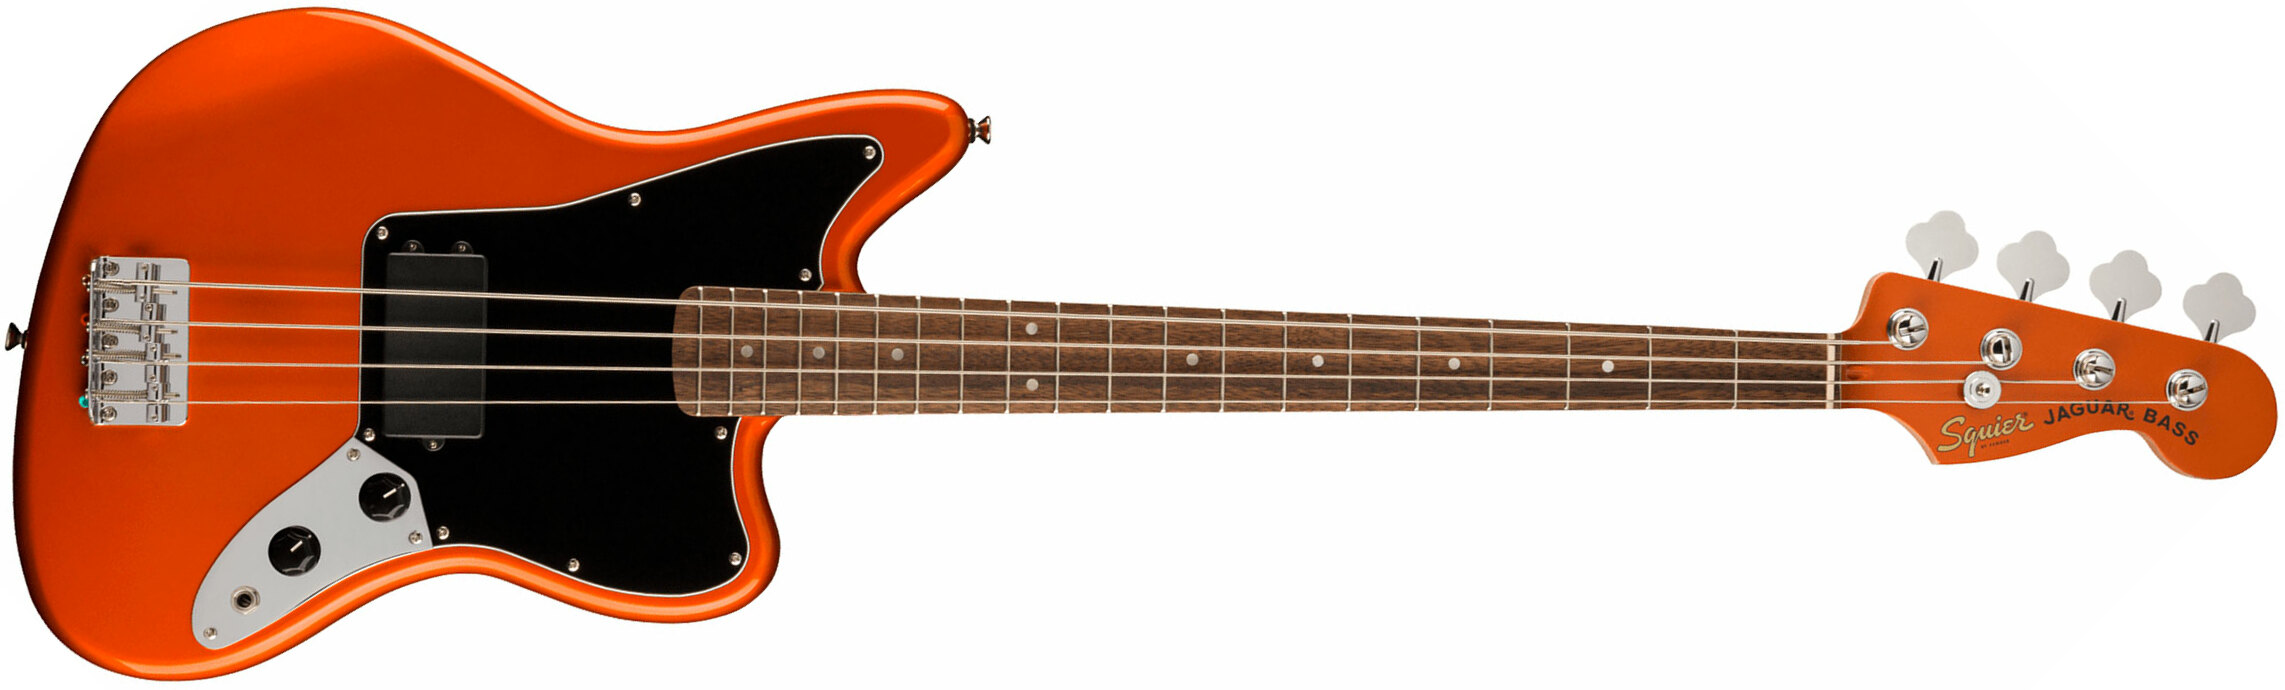 Squier Jaguar Bass H Affinity Fsr Lau - Metallic Orange - Basse Électrique Solid Body - Main picture